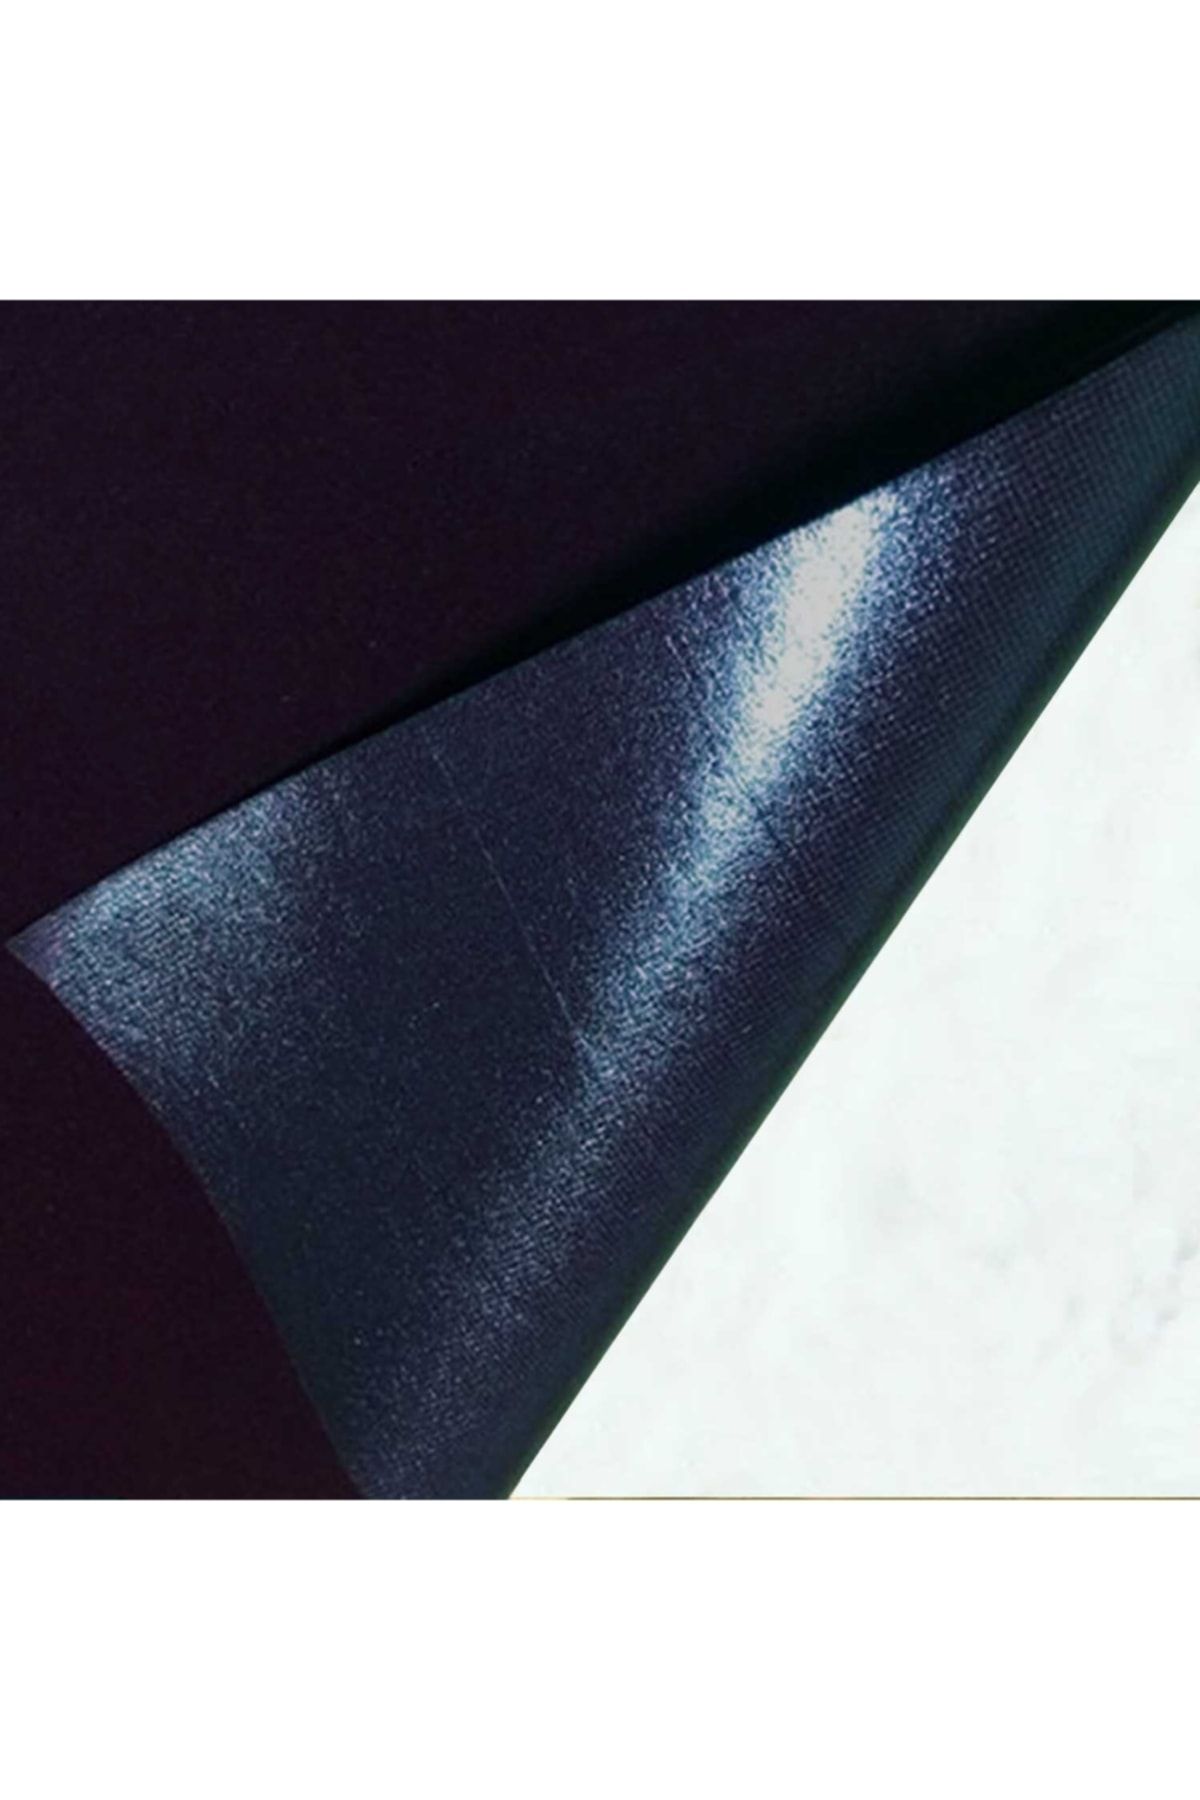 direkt-al Yapışkanlı Süet Kadife Kumaş 45x50 cm Siyah